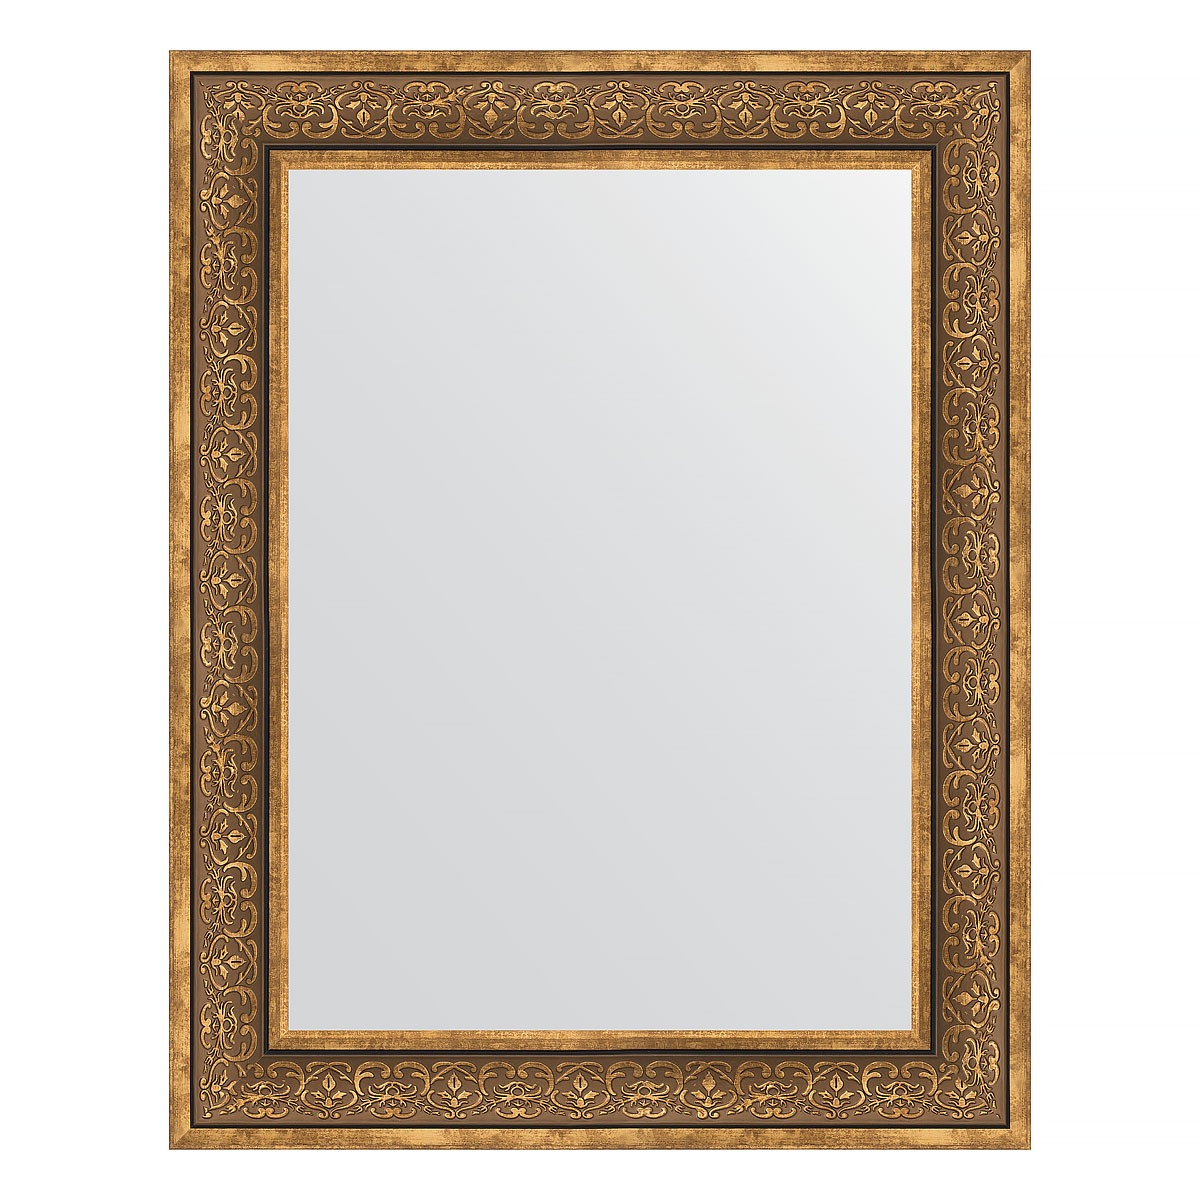 Зеркало в багетной раме Evoform вензель бронзовый 101 мм 73х93 см зеркало 73х93 см вензель серебряный evoform definite by 3192